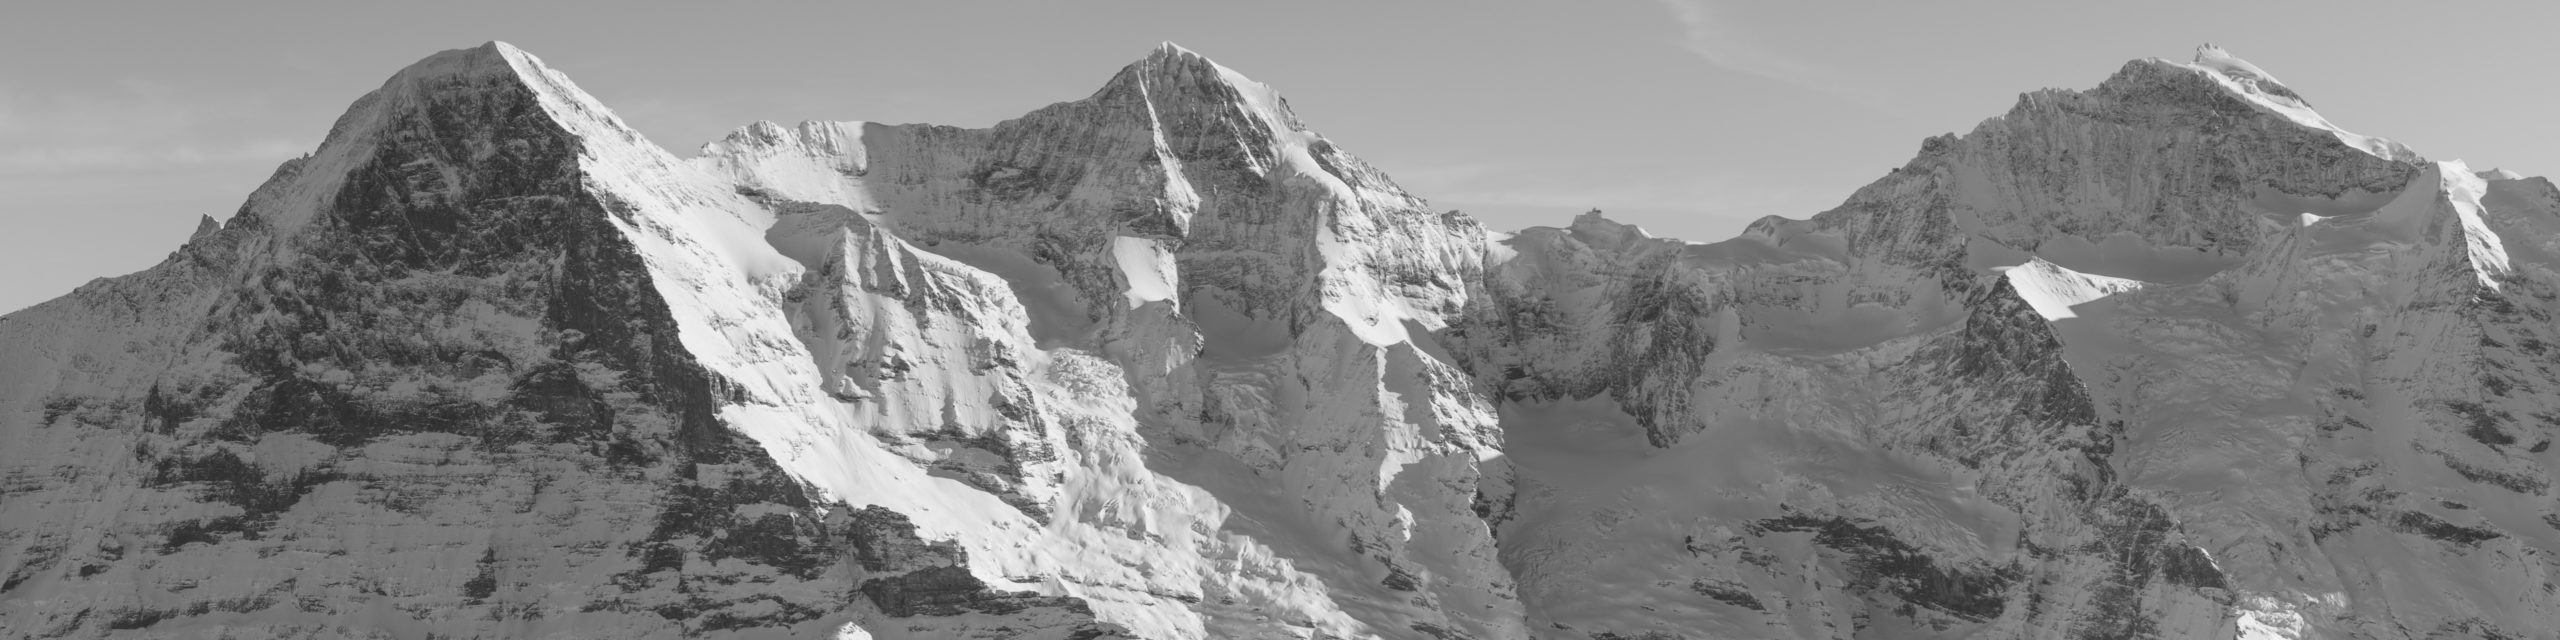 Panorama noir et blanc des Alpes Bernoises - Montagnes rocheuses en suisse